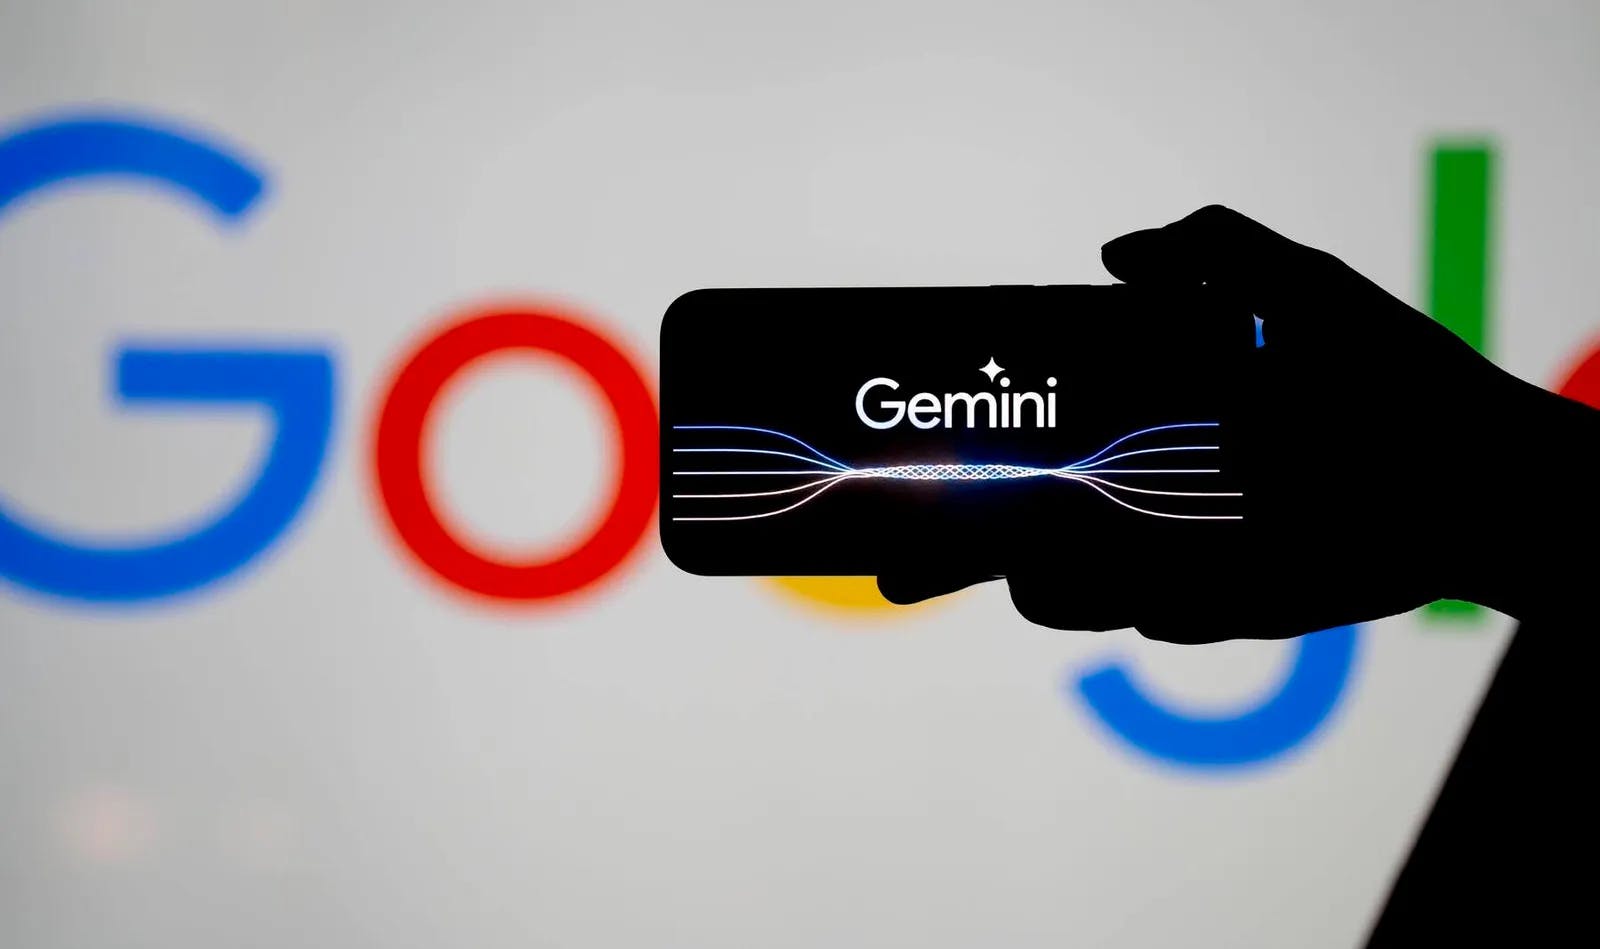 Go woke, go broke: Google verliert Milliarden nach KI-Debakel